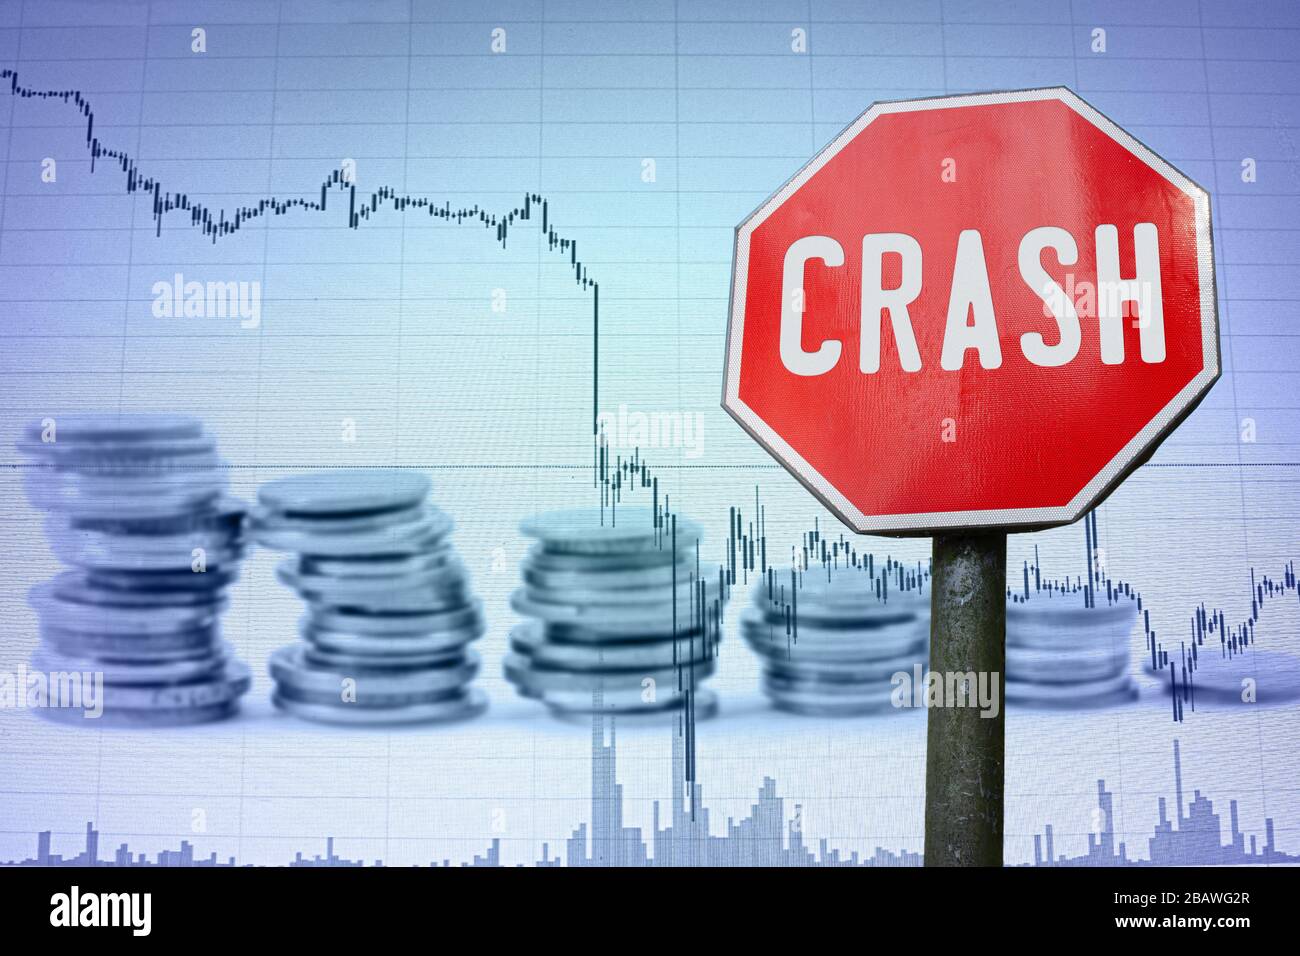 Crash-Zeichen auf dem wirtschaftlichen Hintergrund - Diagramm und Münzen. Finanzunfall in der Weltwirtschaft wegen Coronavirus. Weltwirtschaftskrise, Rezession. Stockfoto